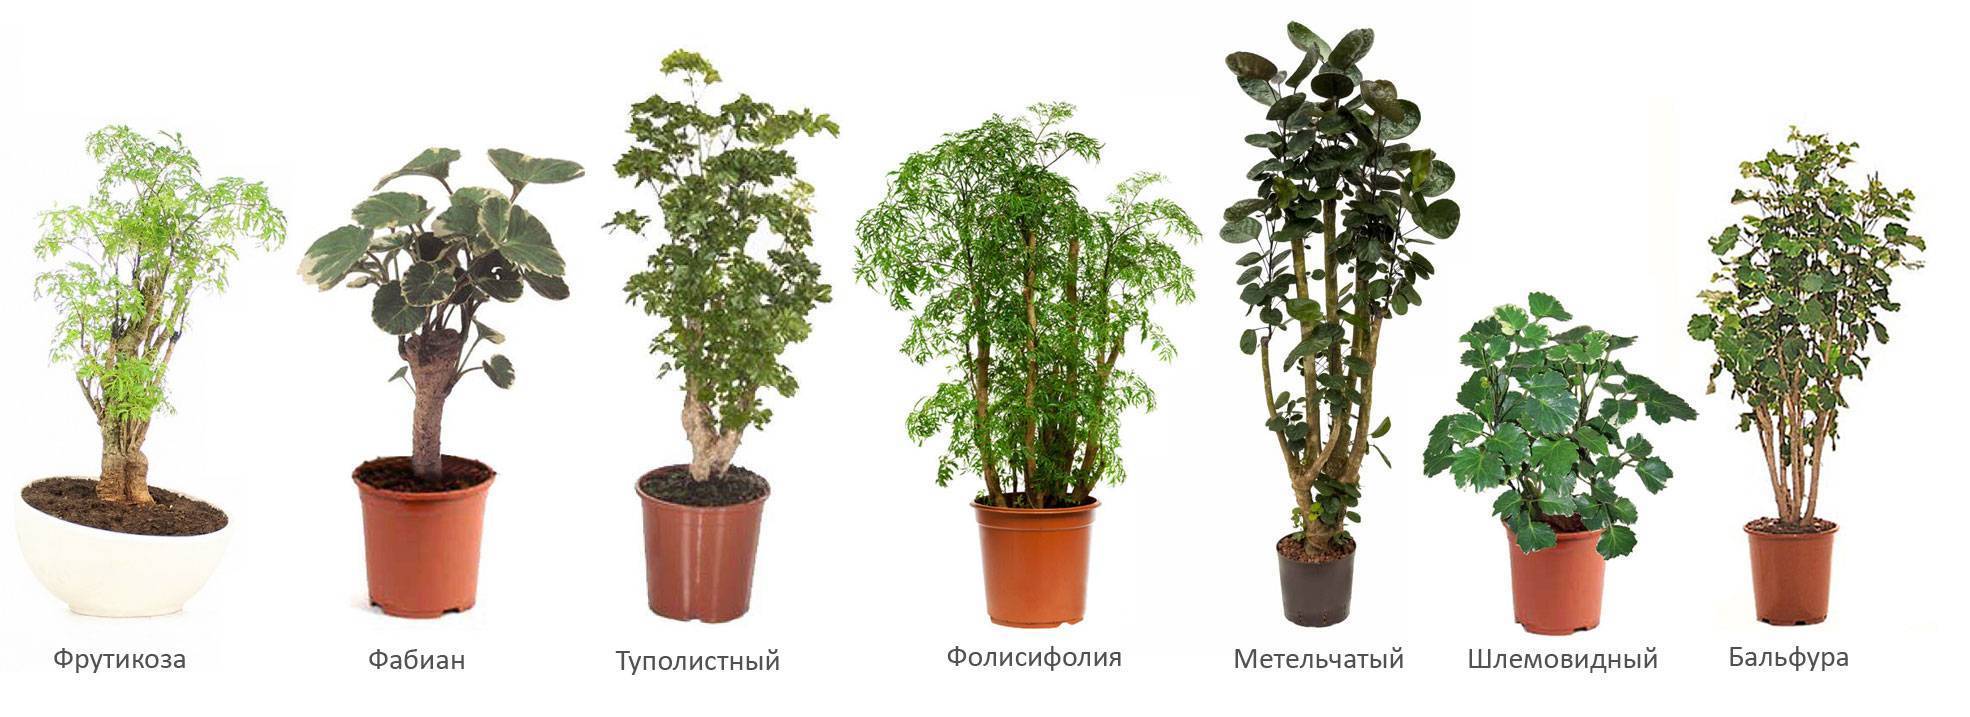 Полисциас - основные правила и требования к выращиванию растения своими руками (80 фото)